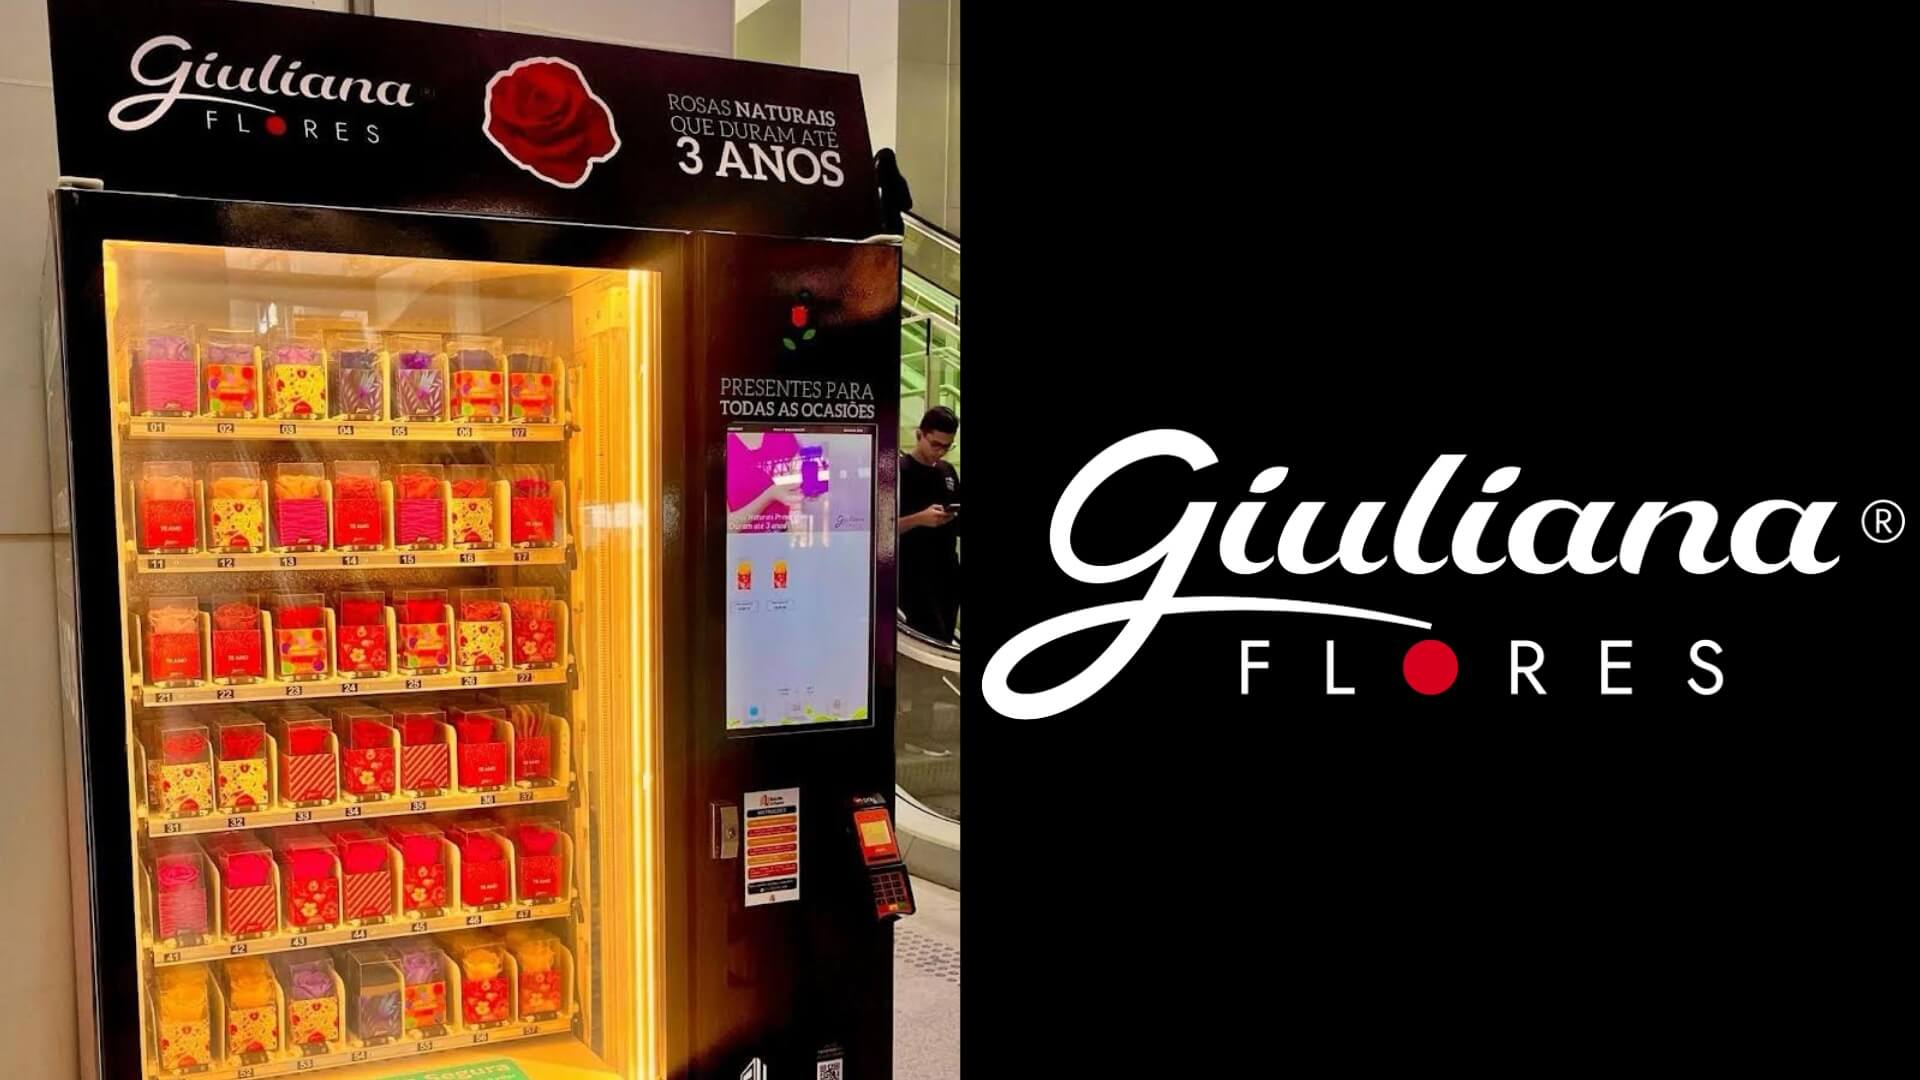 Giuliana Flores encanta São Paulo com máquinas de venda de Rosas Encantadas